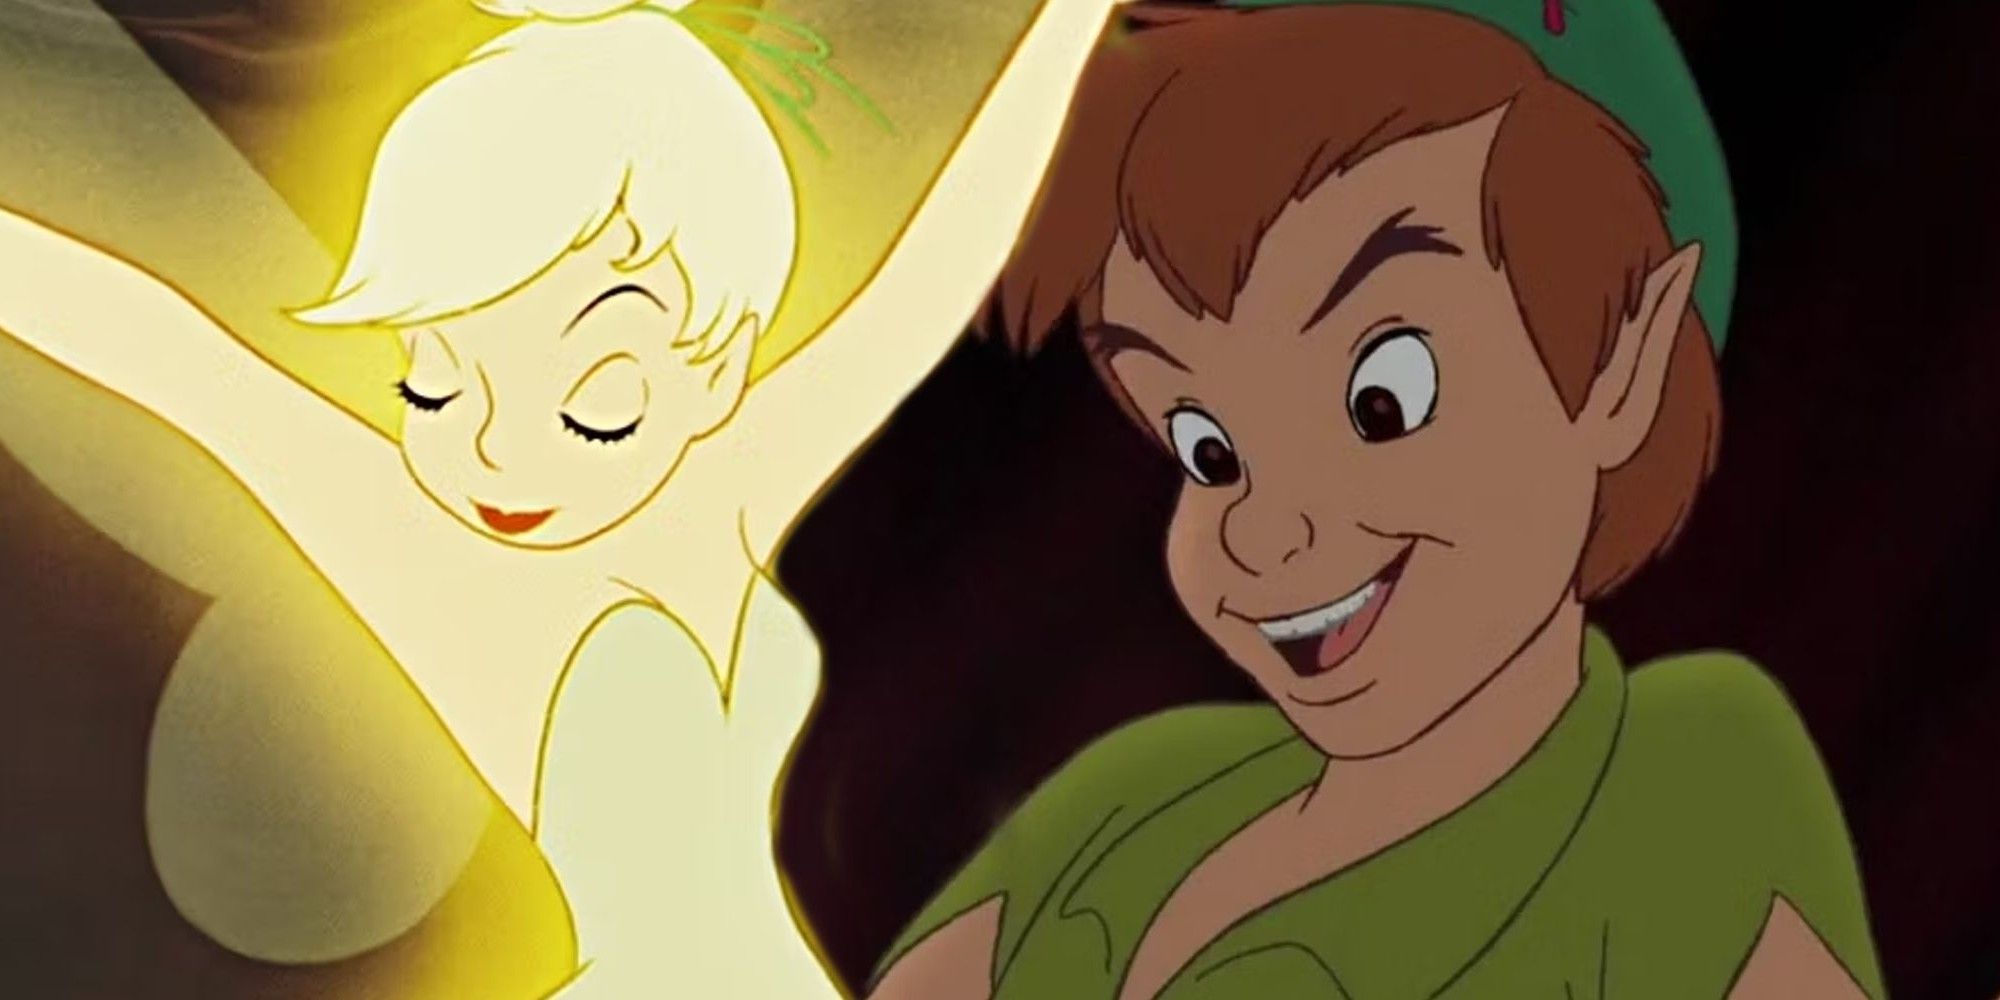 El primer vistazo y los detalles de la historia de la nueva película de Peter Pan revelan un giro de terror del querido personaje infantil